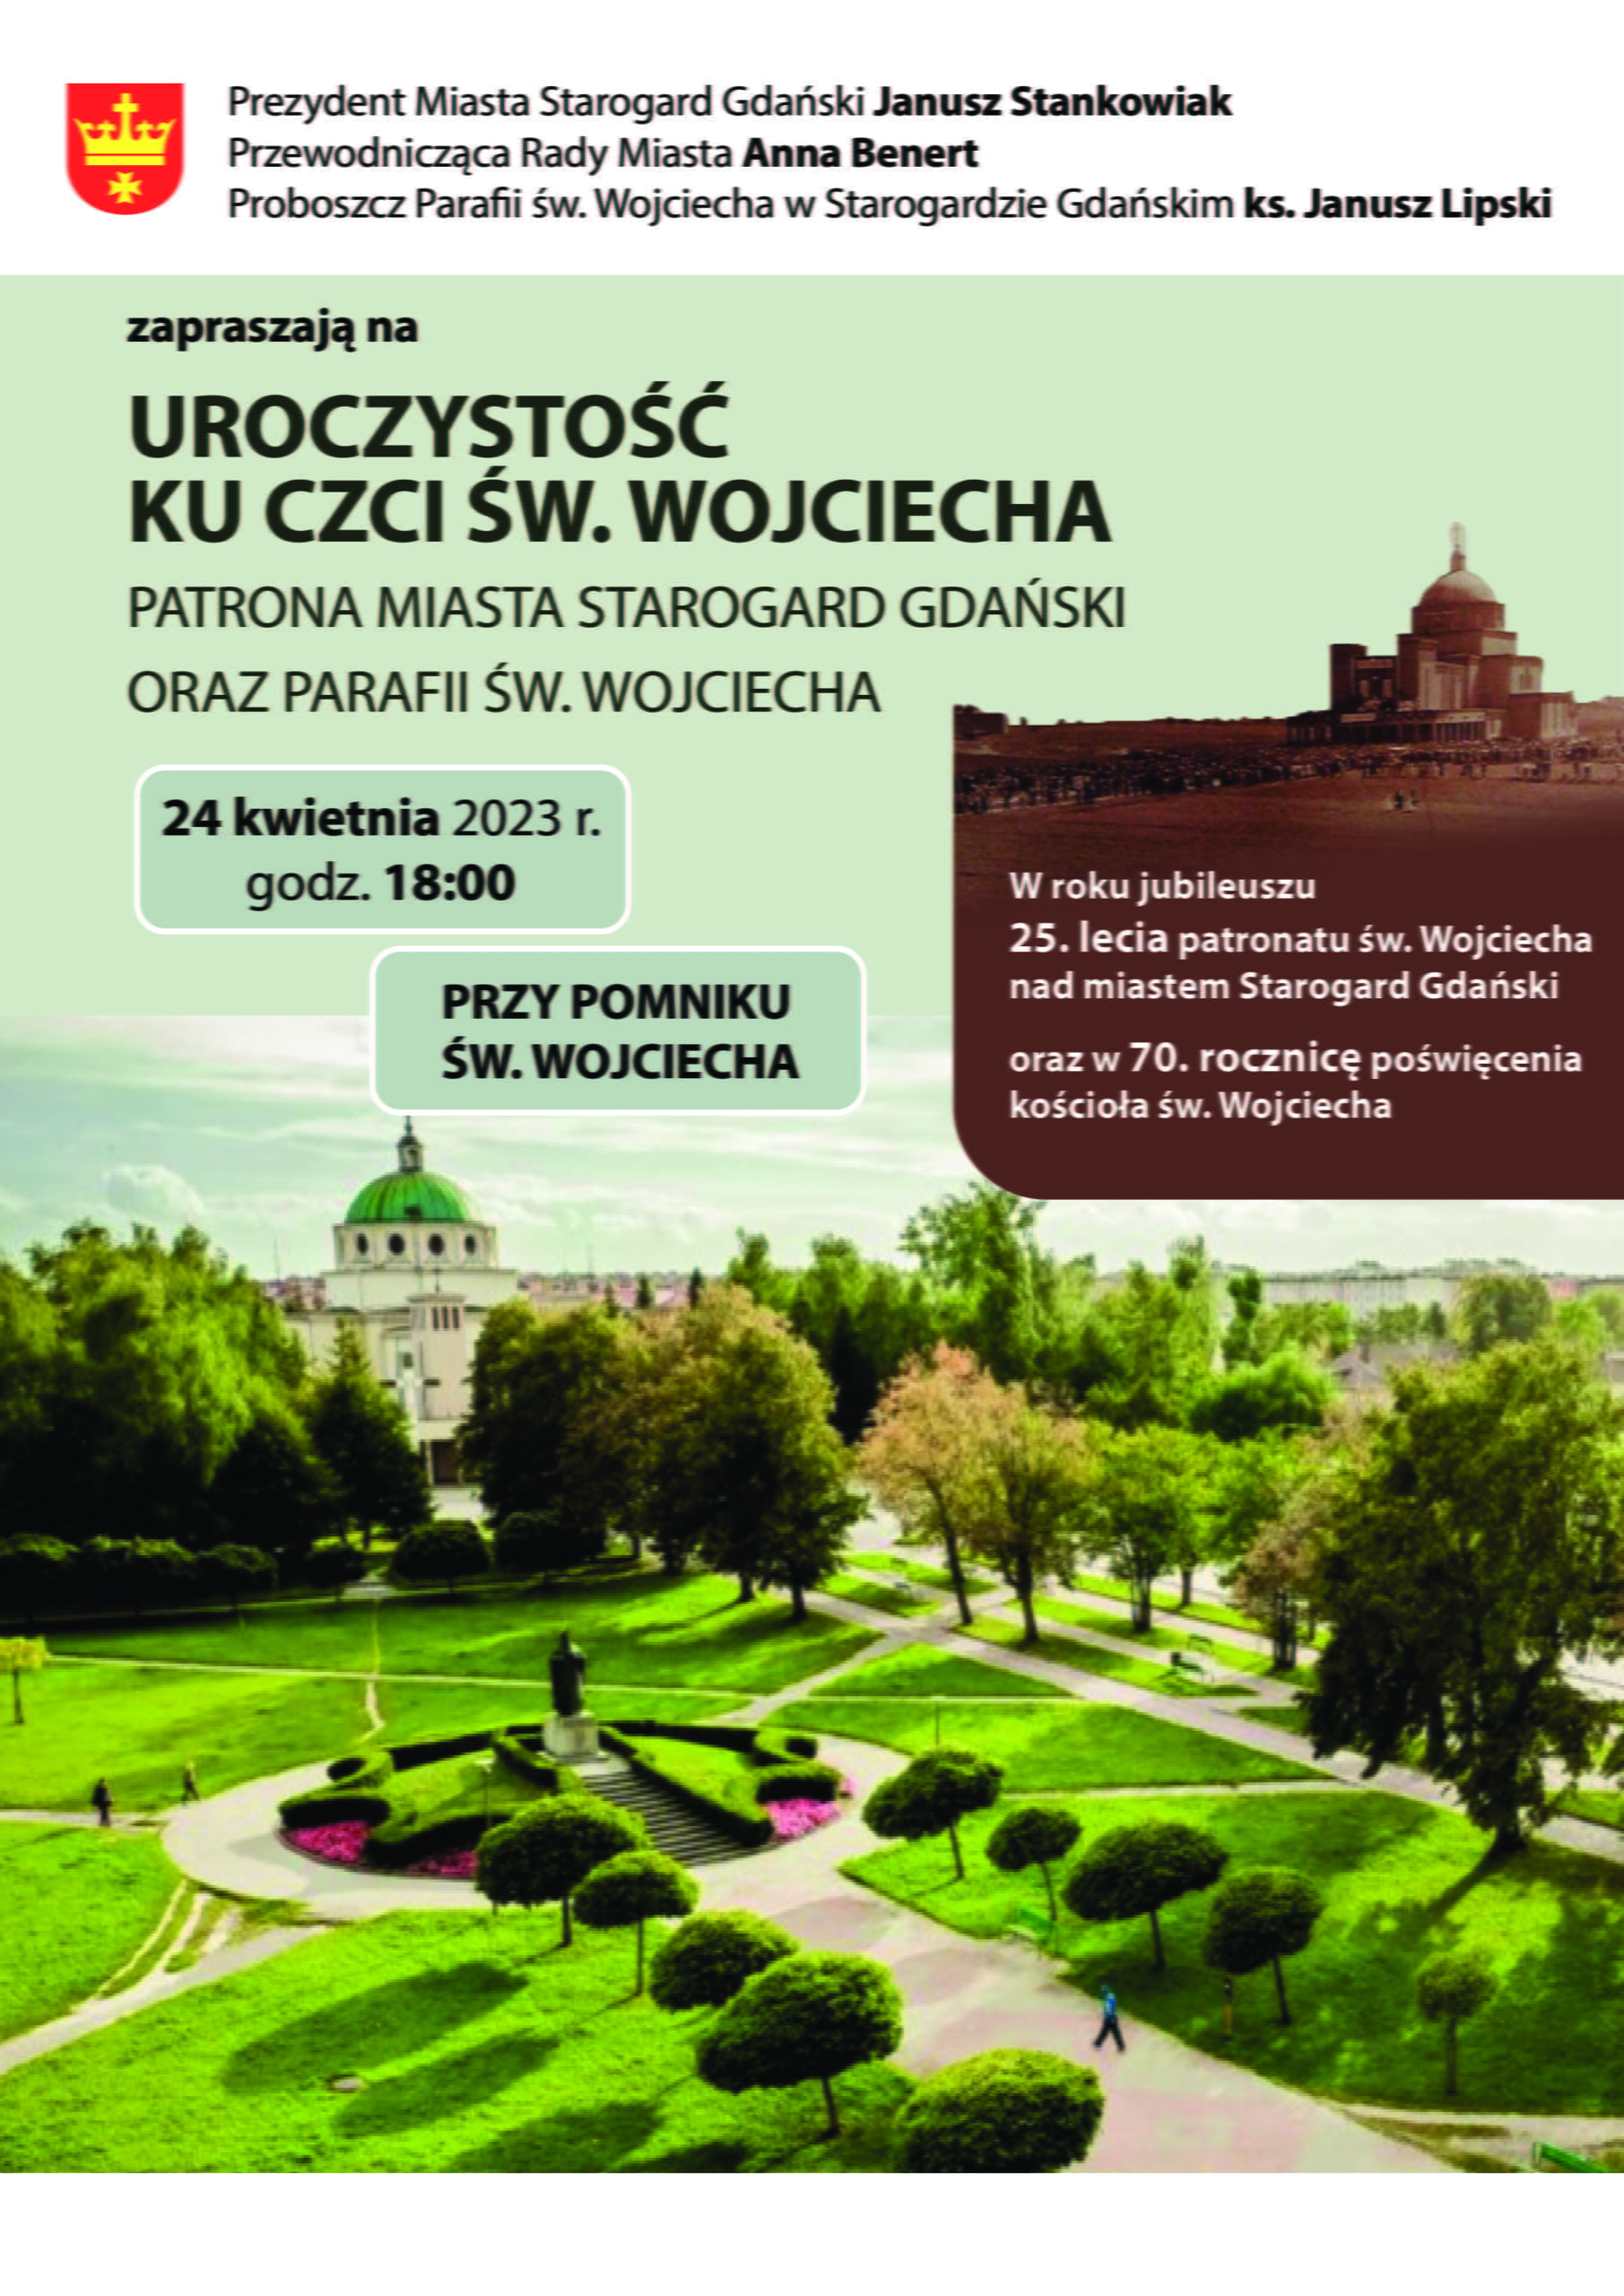 Plakat informujący o uroczystościach w dniu 24 kwietnia godzina 18:00 pod pomnikiem św. Wojciecha.